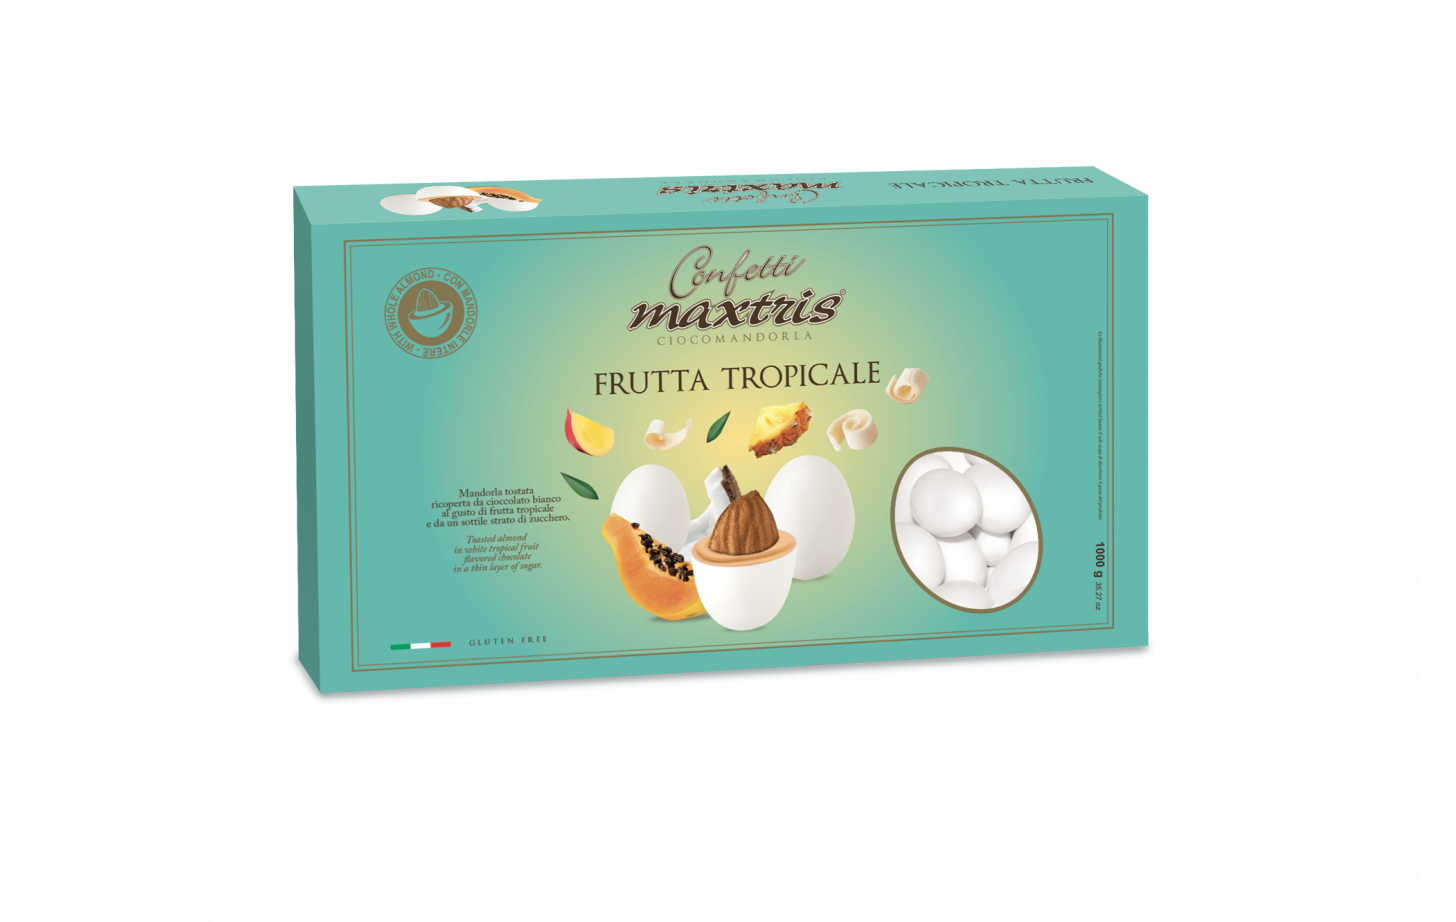 Confetti Maxtris cioccomandorla frutta tropicale 1 kg Maxtris